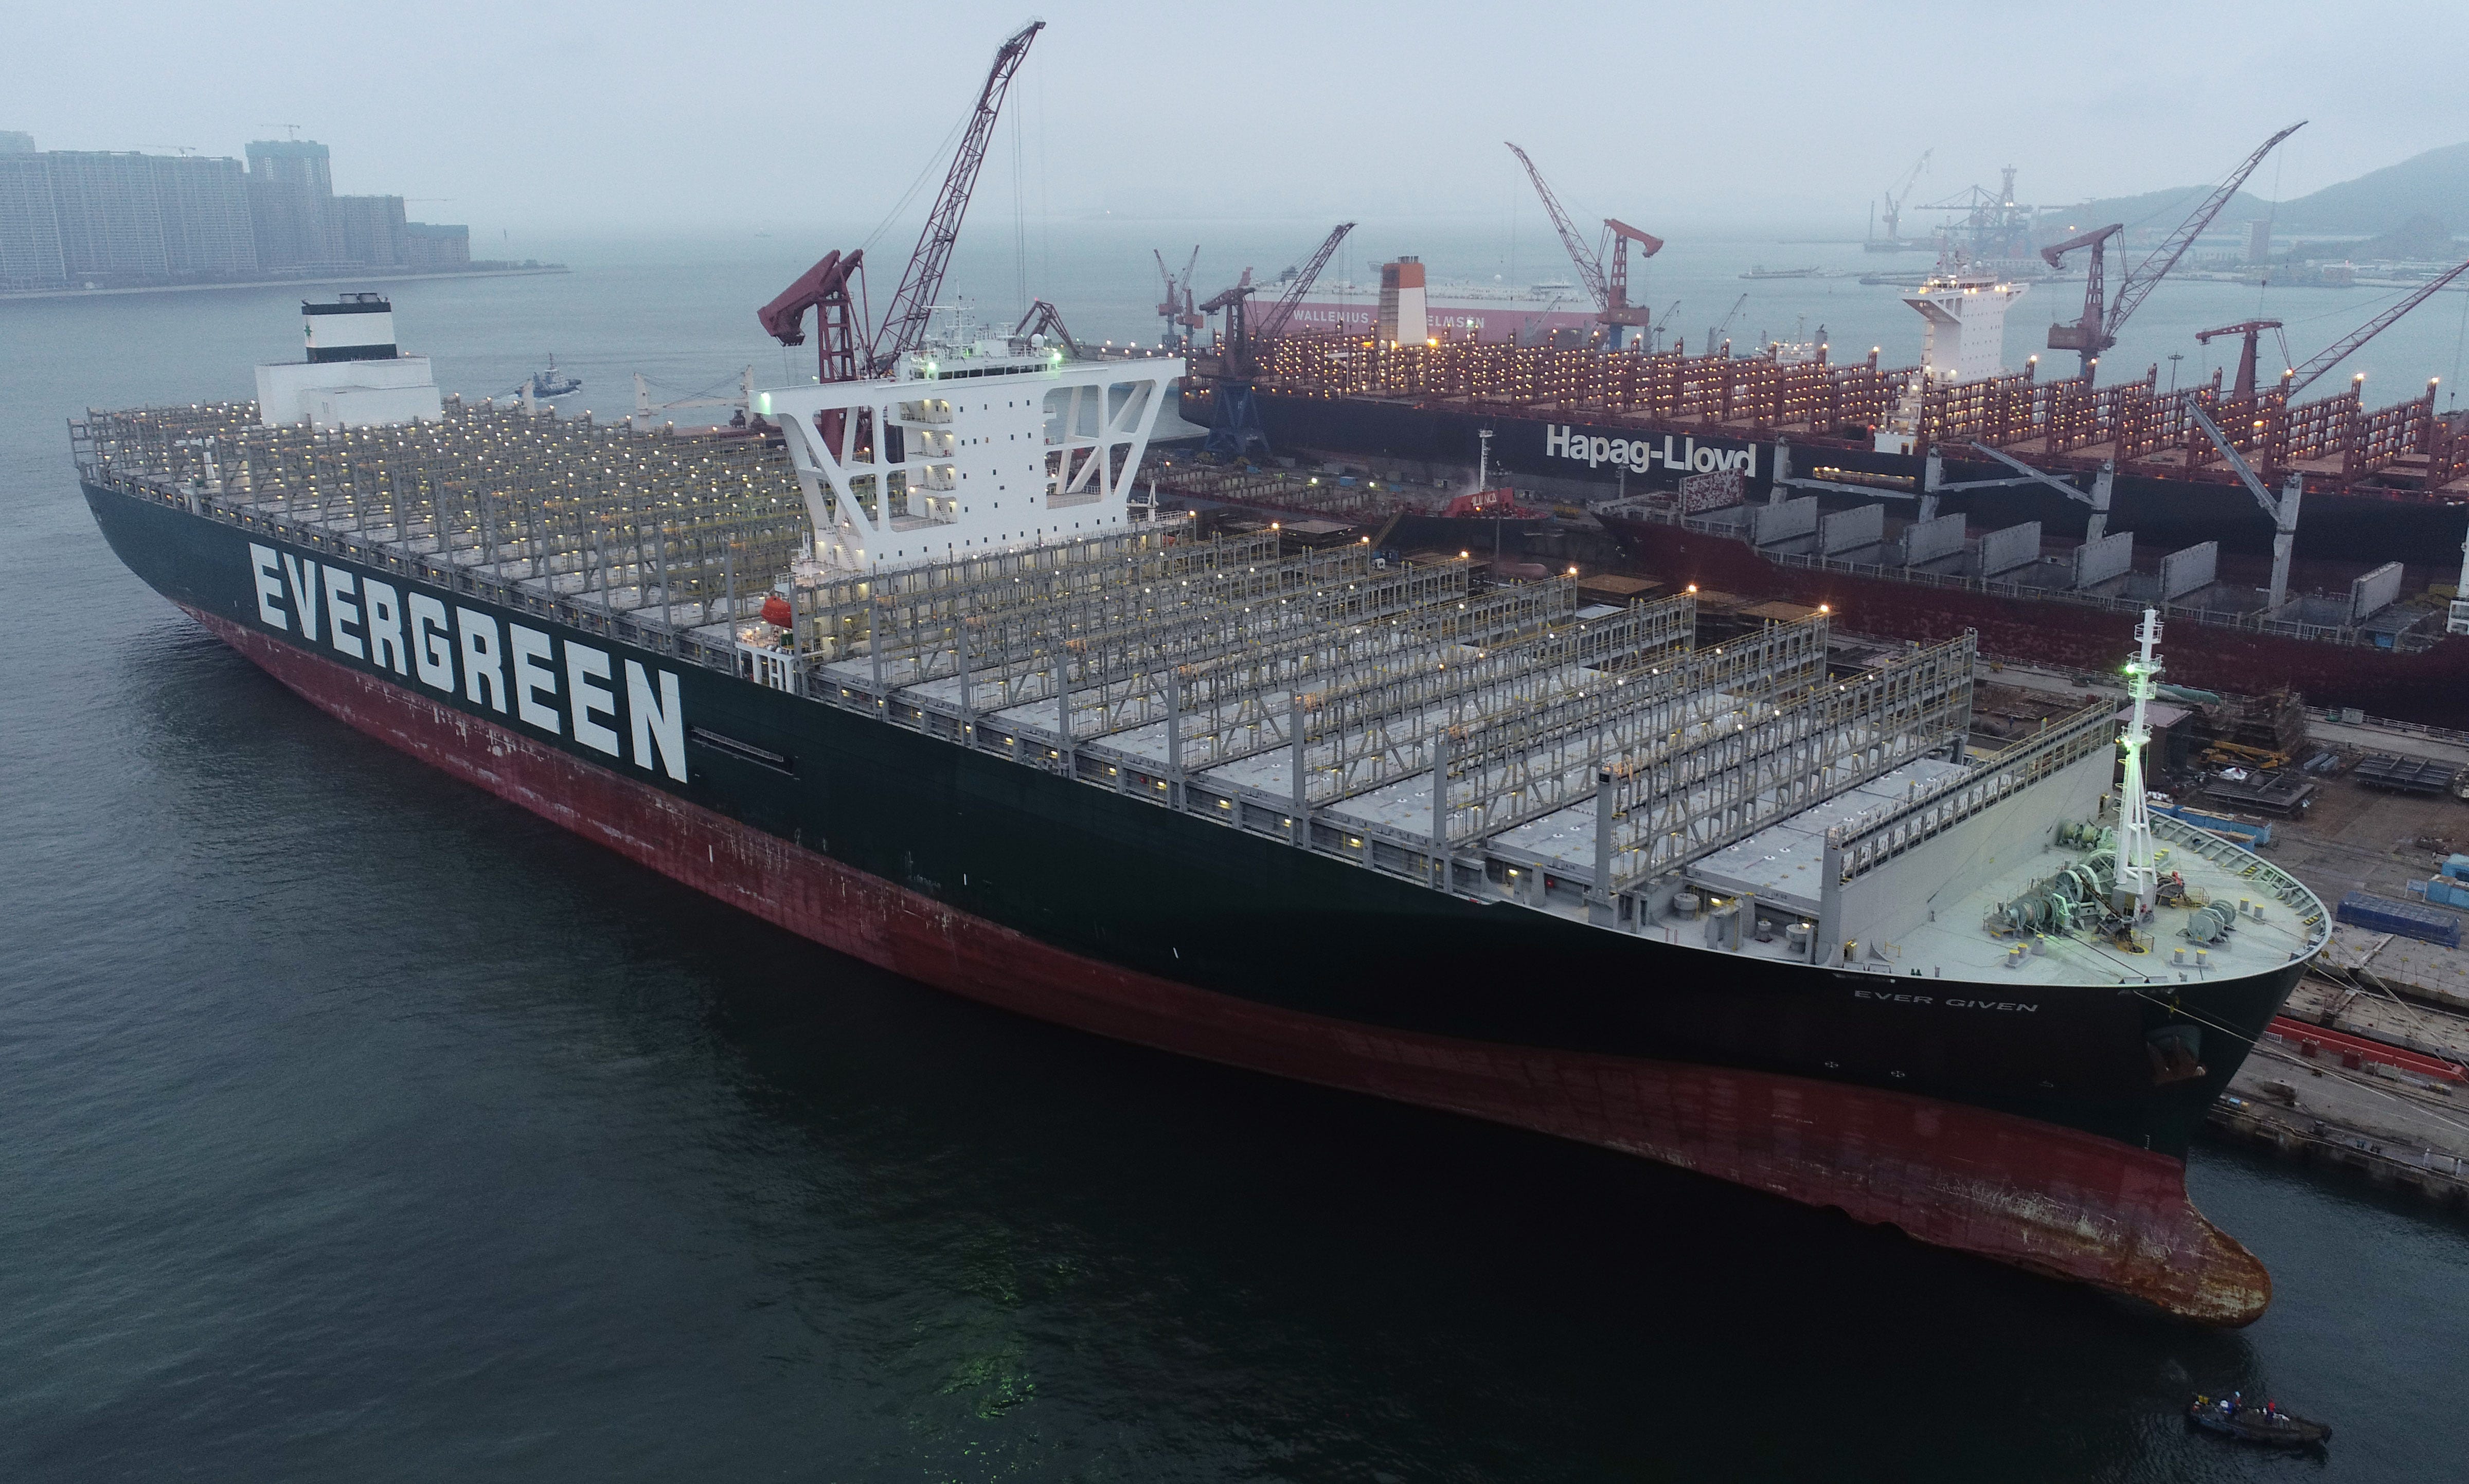 Containerschiffe werden jedes Jahr größer – die Ever Given ist länger als drei Fußballfelder.